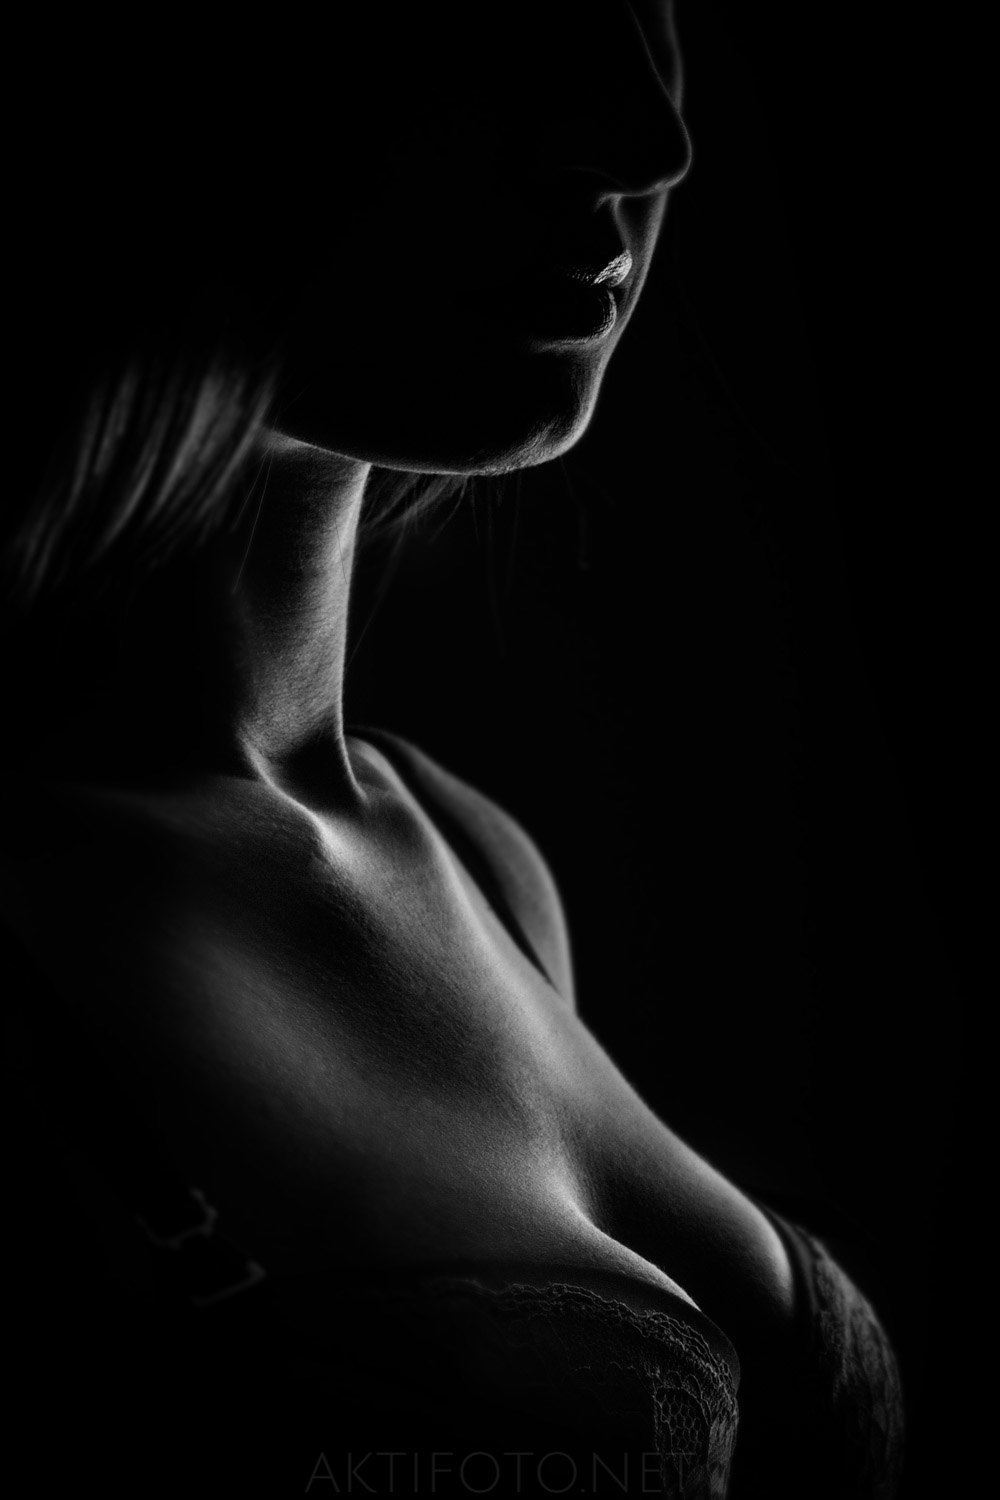 Kunstiline ilus aktifoto naise alasti kehast tumedate toonidega